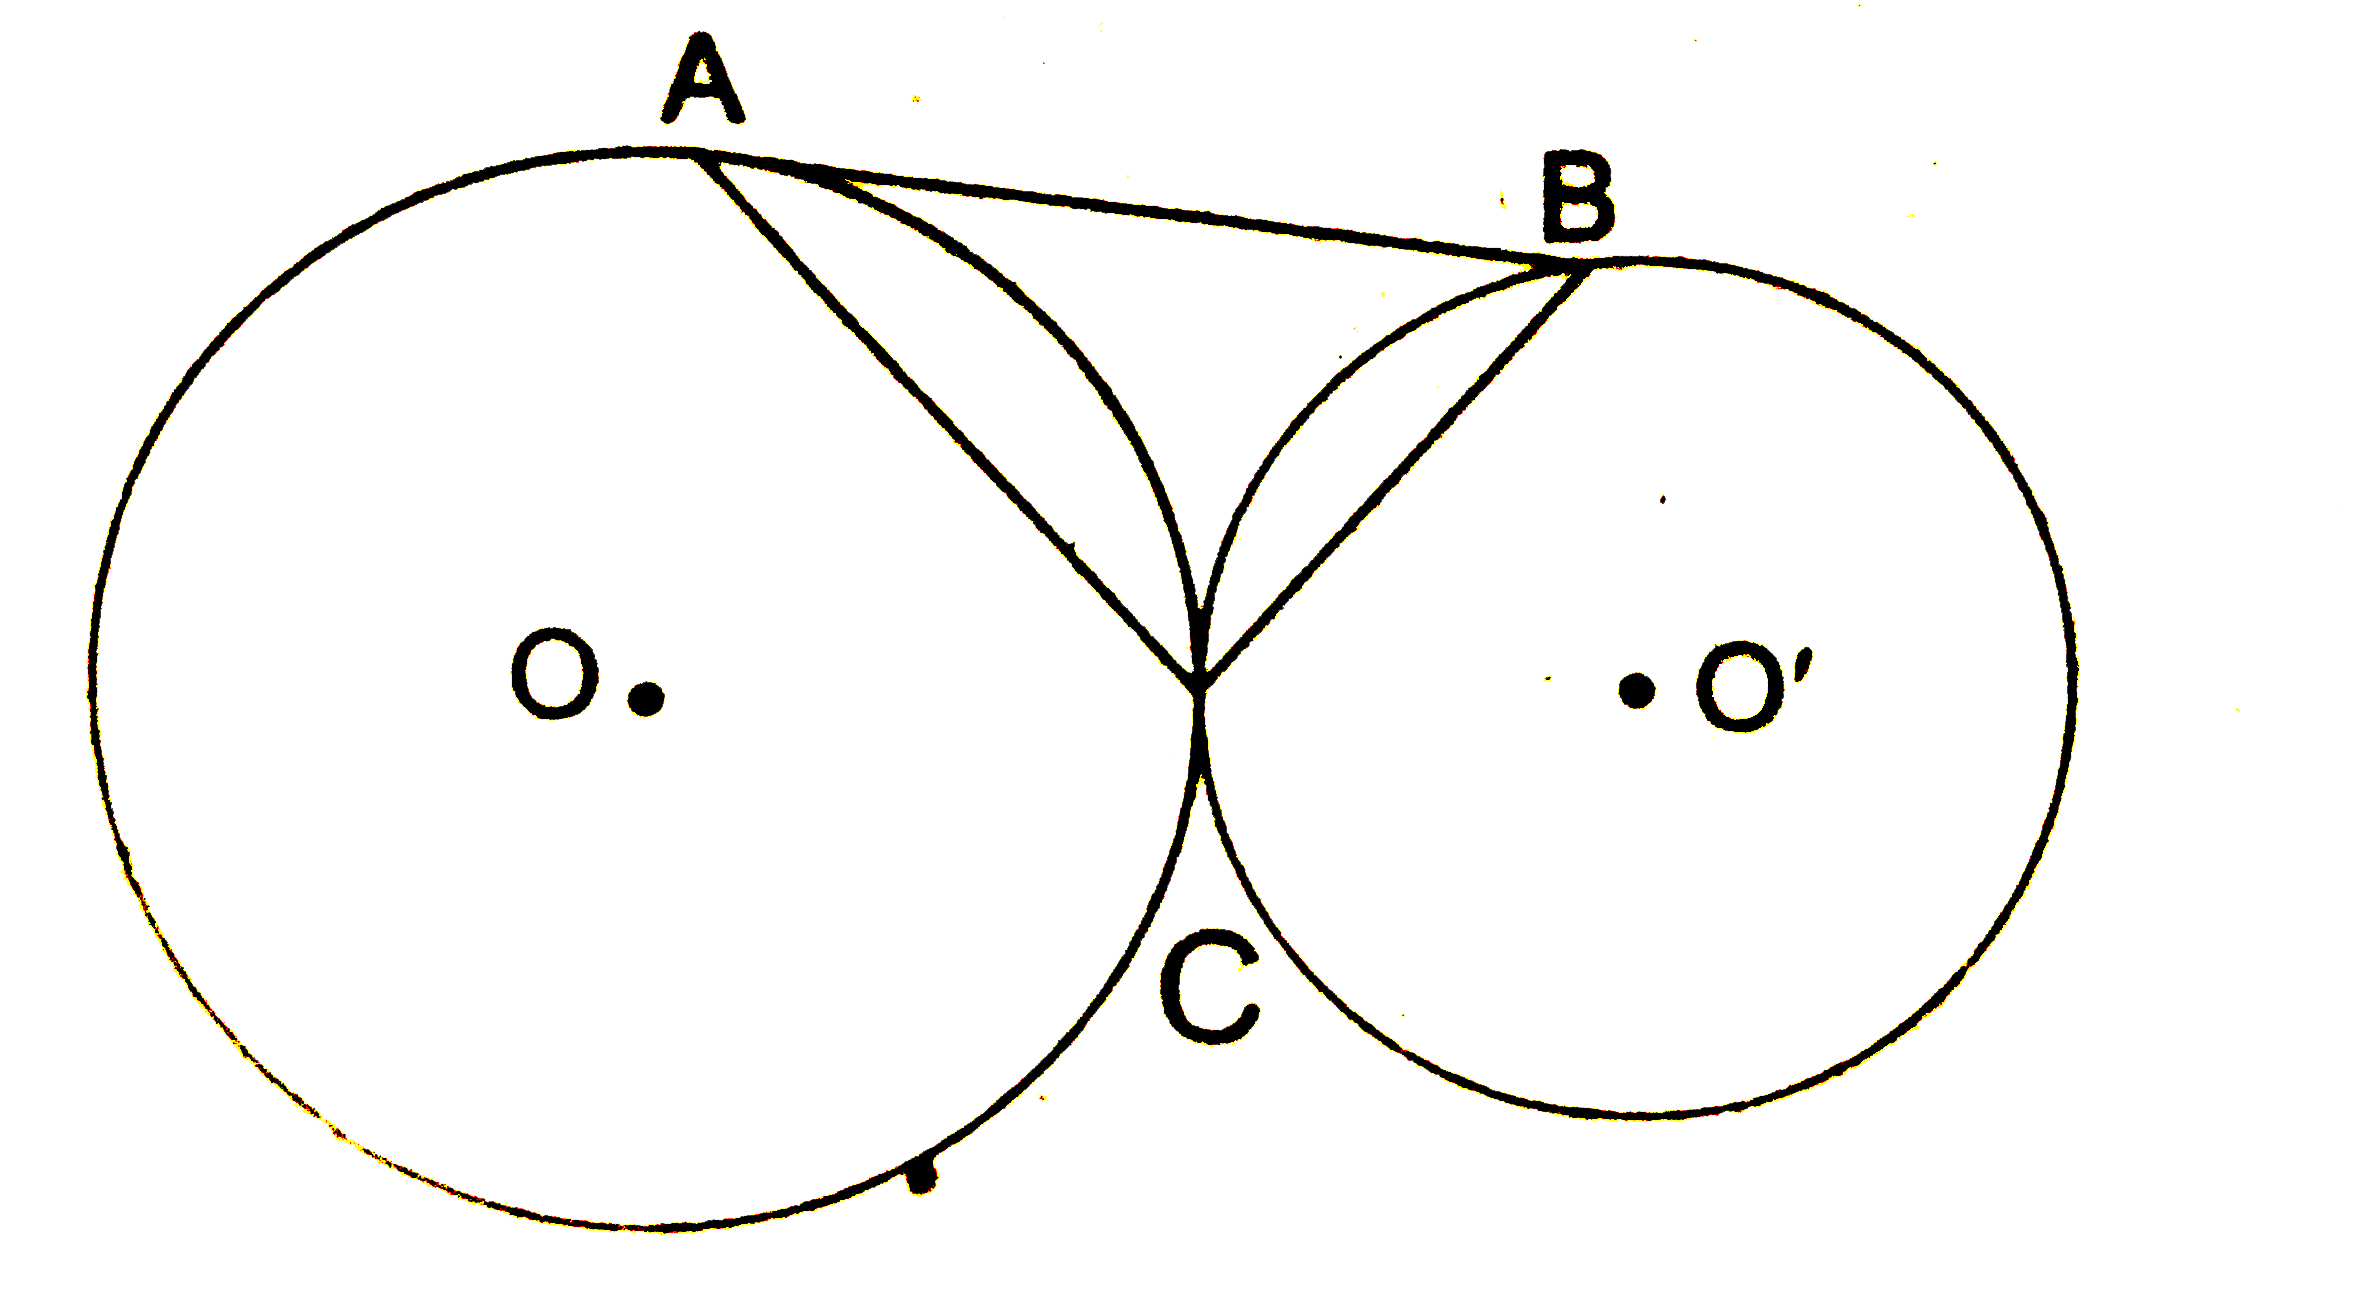 चित्र में O एवं O' केन्द्र के दो वृत्त एक-दूसरे का बाह्यतः बिन्दु C पर स्पर्श करते है। इन वृत्तों की एक उभयनिष्ठ स्पर्श रेखा AB खींची गई है। सिद्ध कीजिए कि angleACB=90^(@)